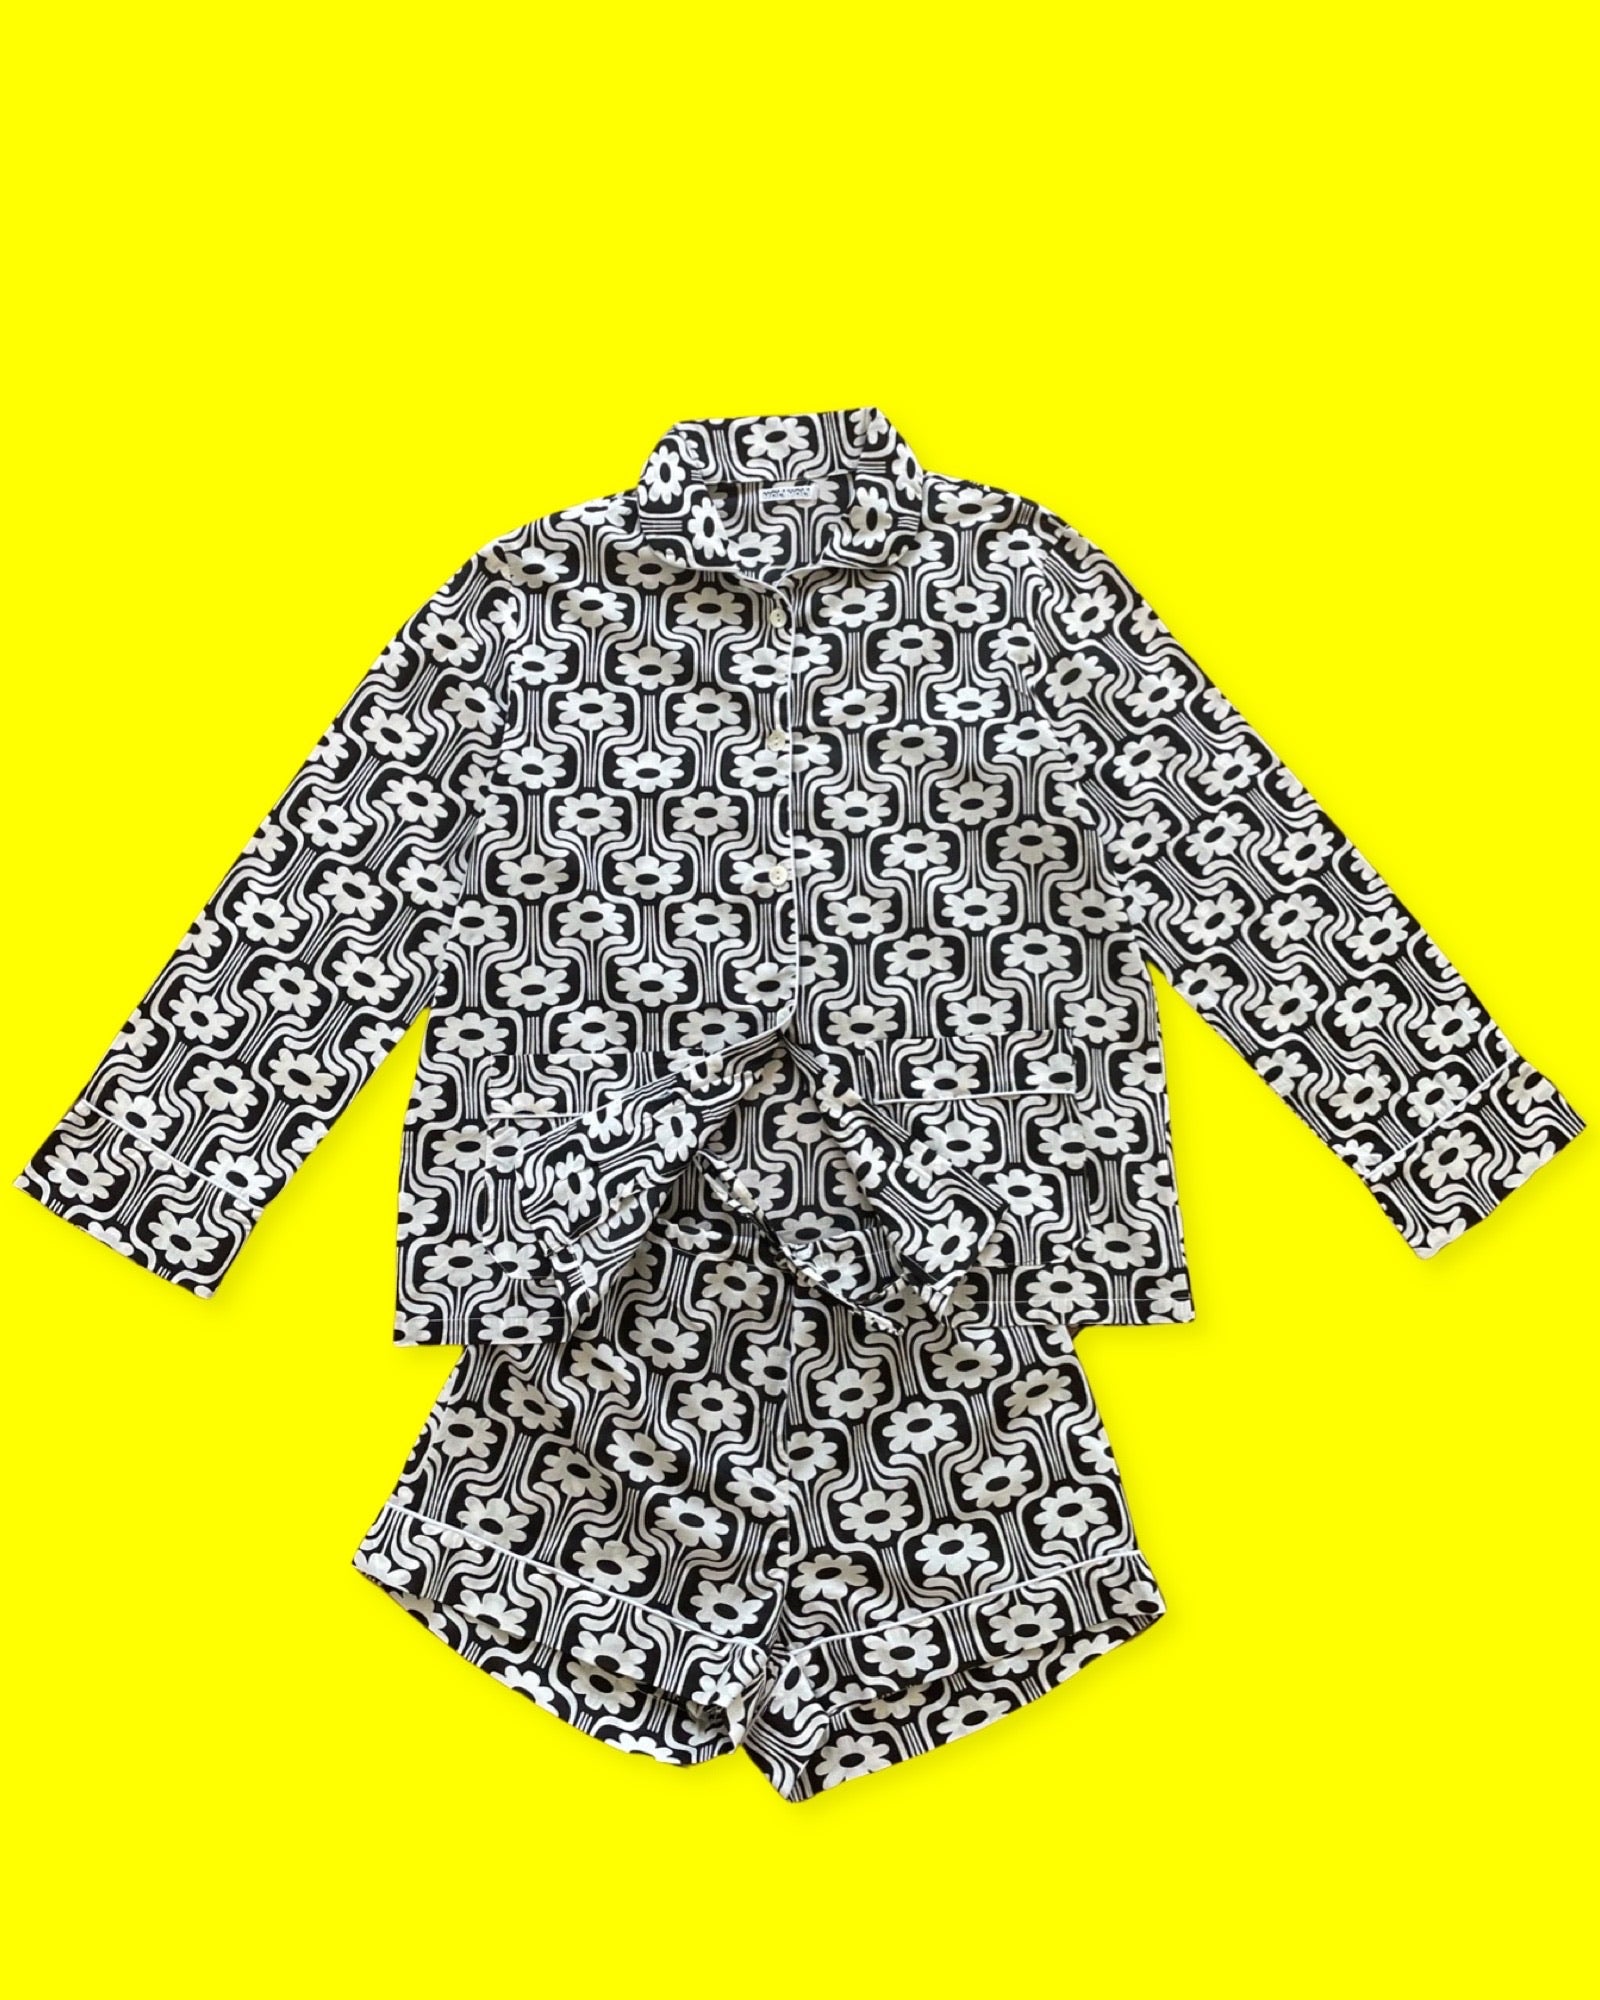 Ce pyjama court pour femme est un ensemble composé d'un haut boutonné à manches longues avec deux poches sur les côtés en bas de la veste et d'un short à taille élastique et à lien. L'imprimé est rétro à fleurs blanches sur fond noir, et un liseré blanc. La photo le présente sur un fond jaune.